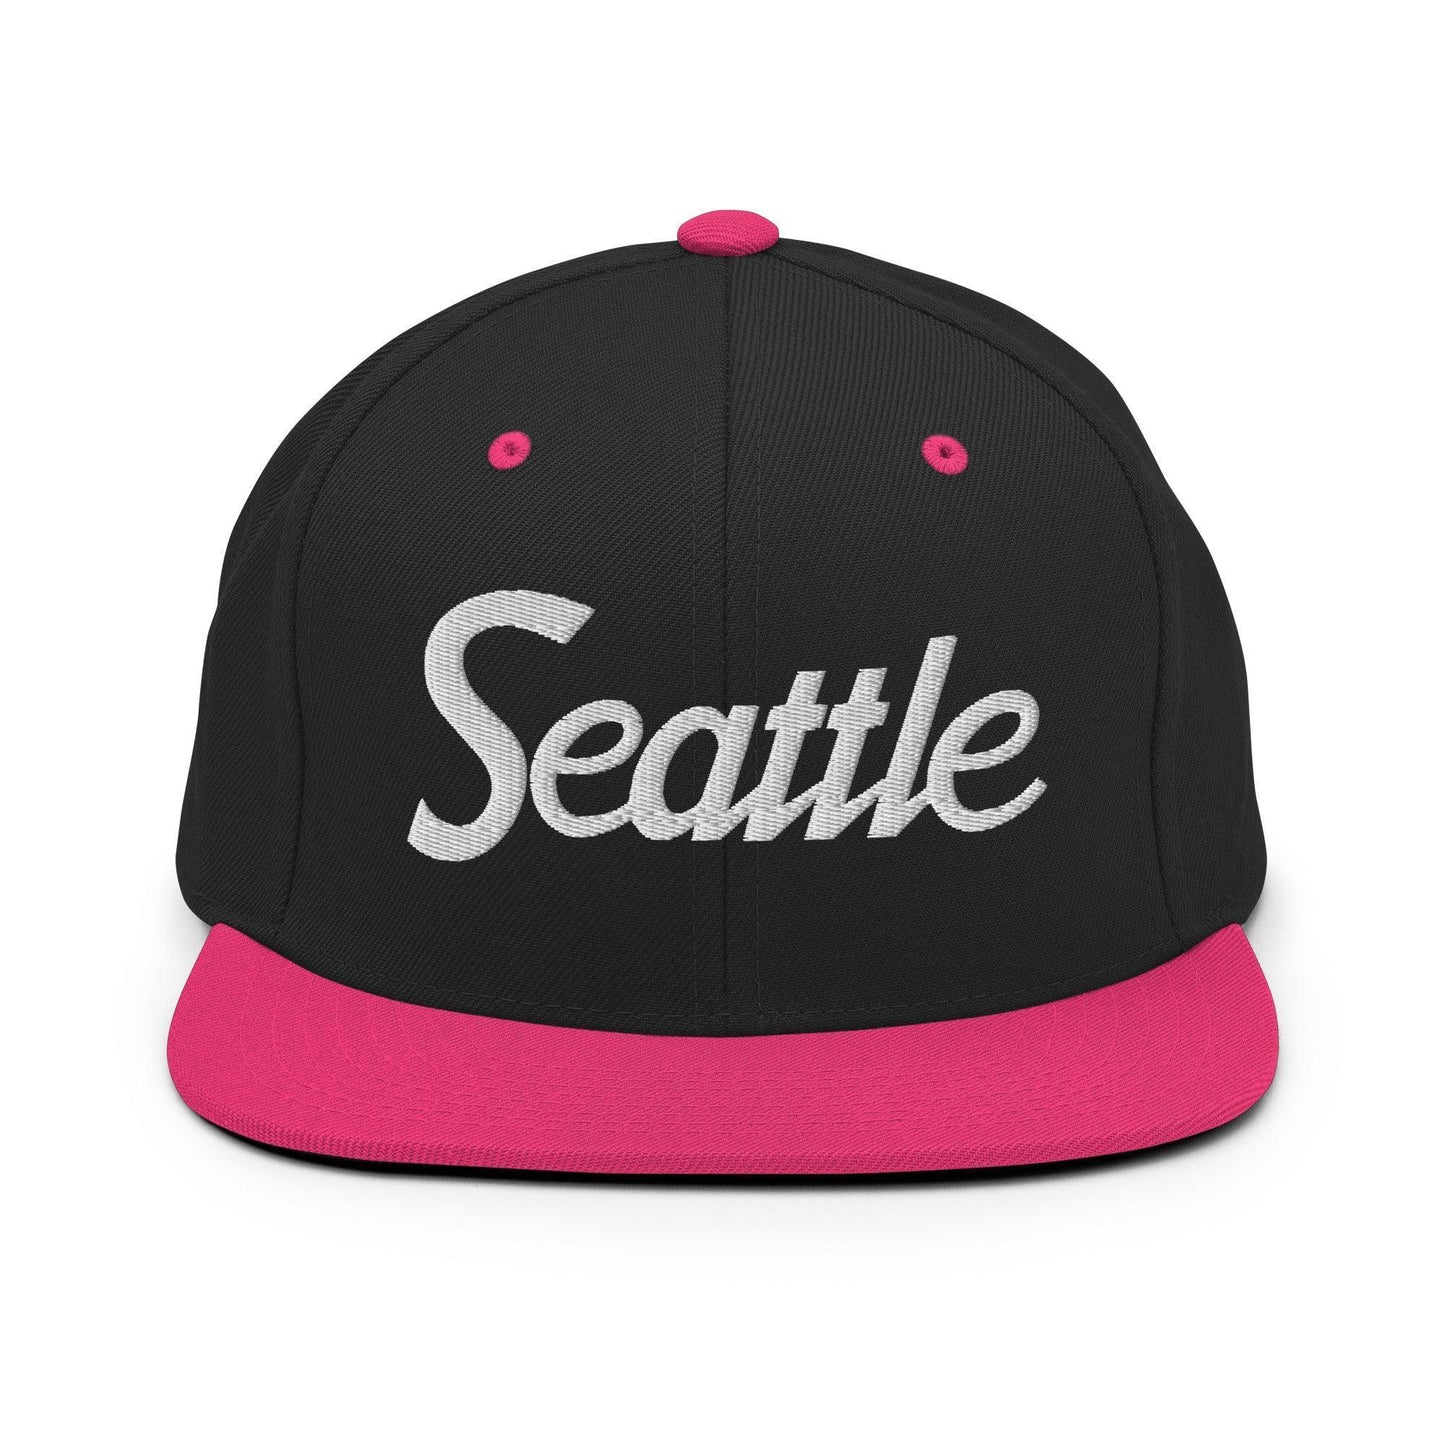 Seattle Script Snapback Hat Black Neon Pink